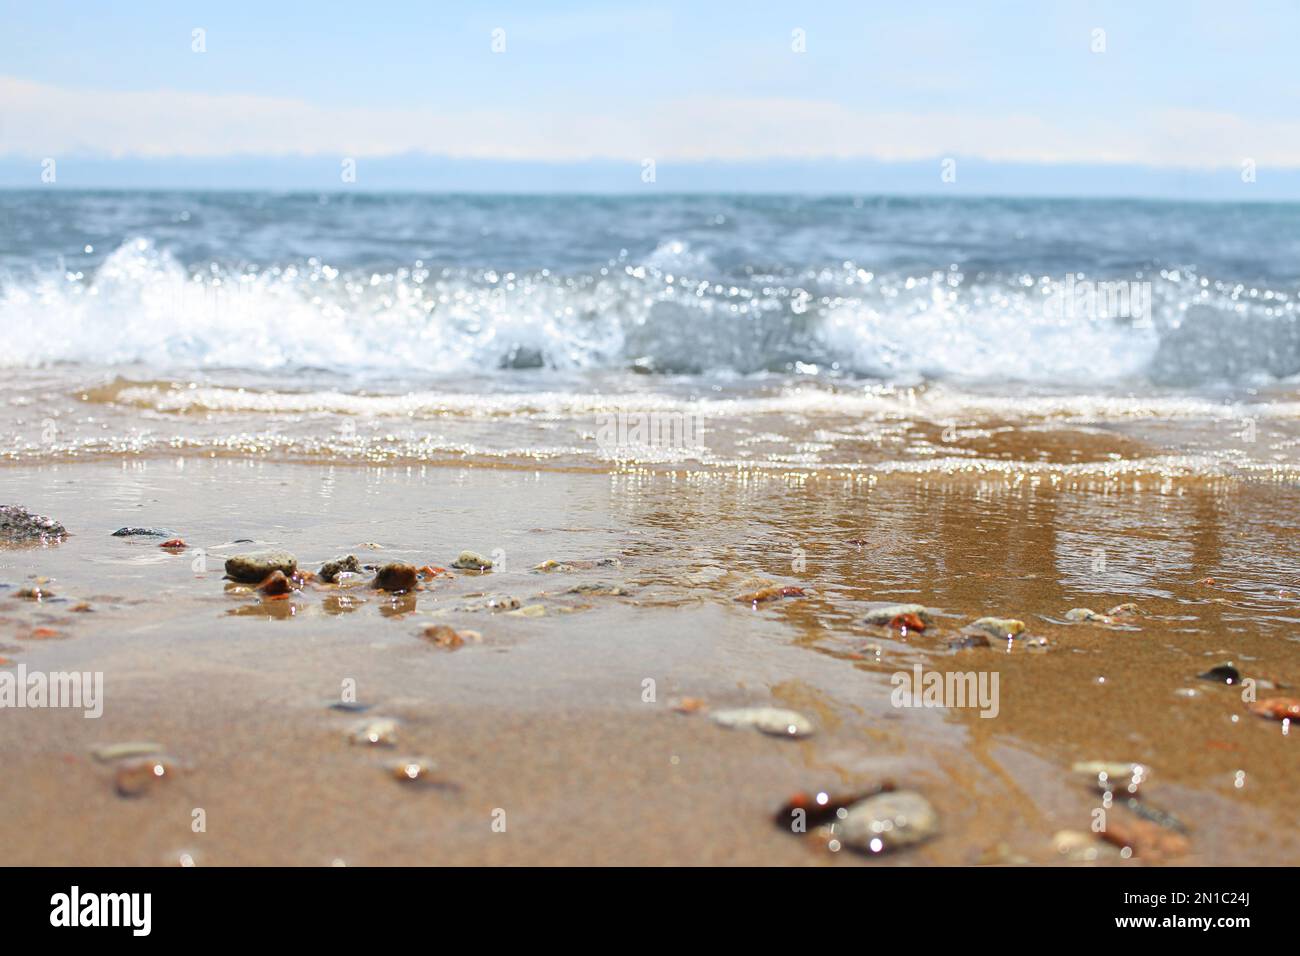 Unschärfe-Strand mit verwischter Welle und nassem Sand mit Kieselsteinen am blauen Himmel. Meer, Meereshintergrund. Outdoor-Urlaub und Reise-Abenteuer-Konzept Stockfoto